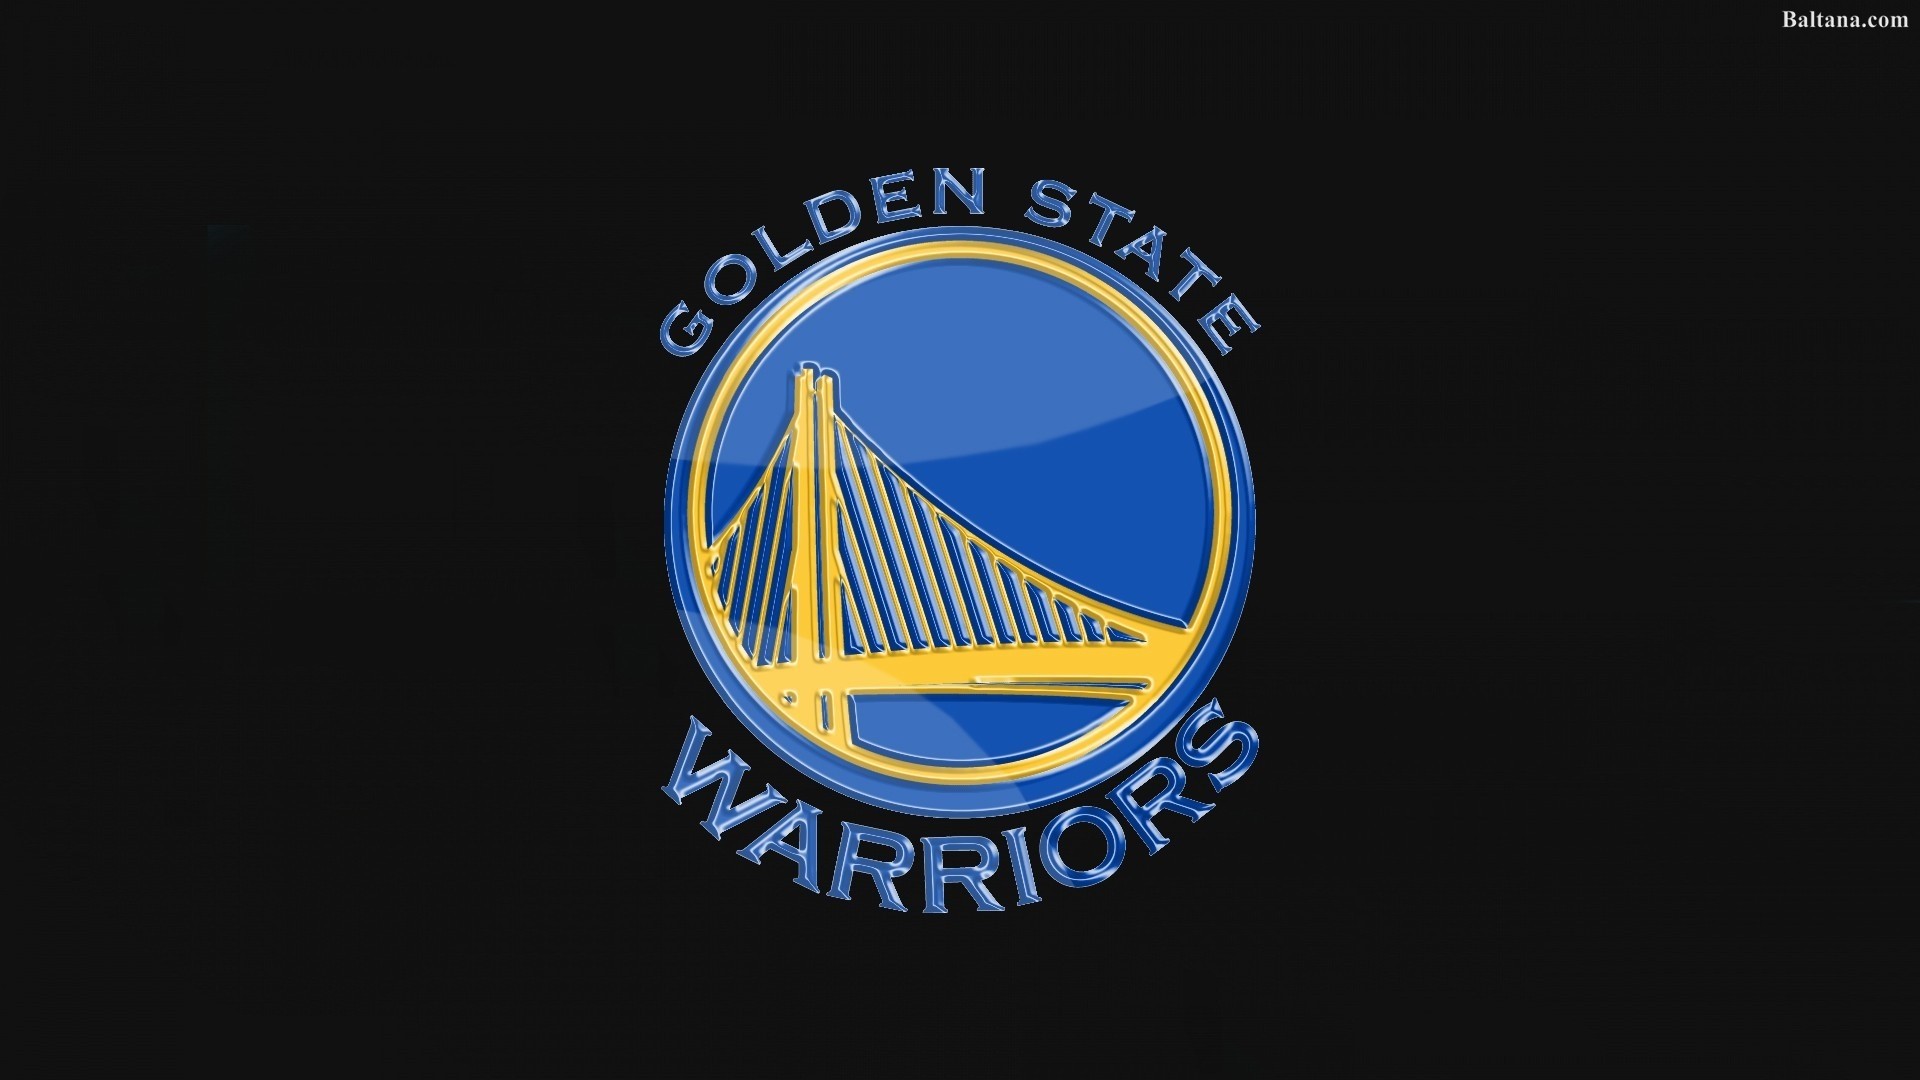 Golden State Warriors Wallpaper